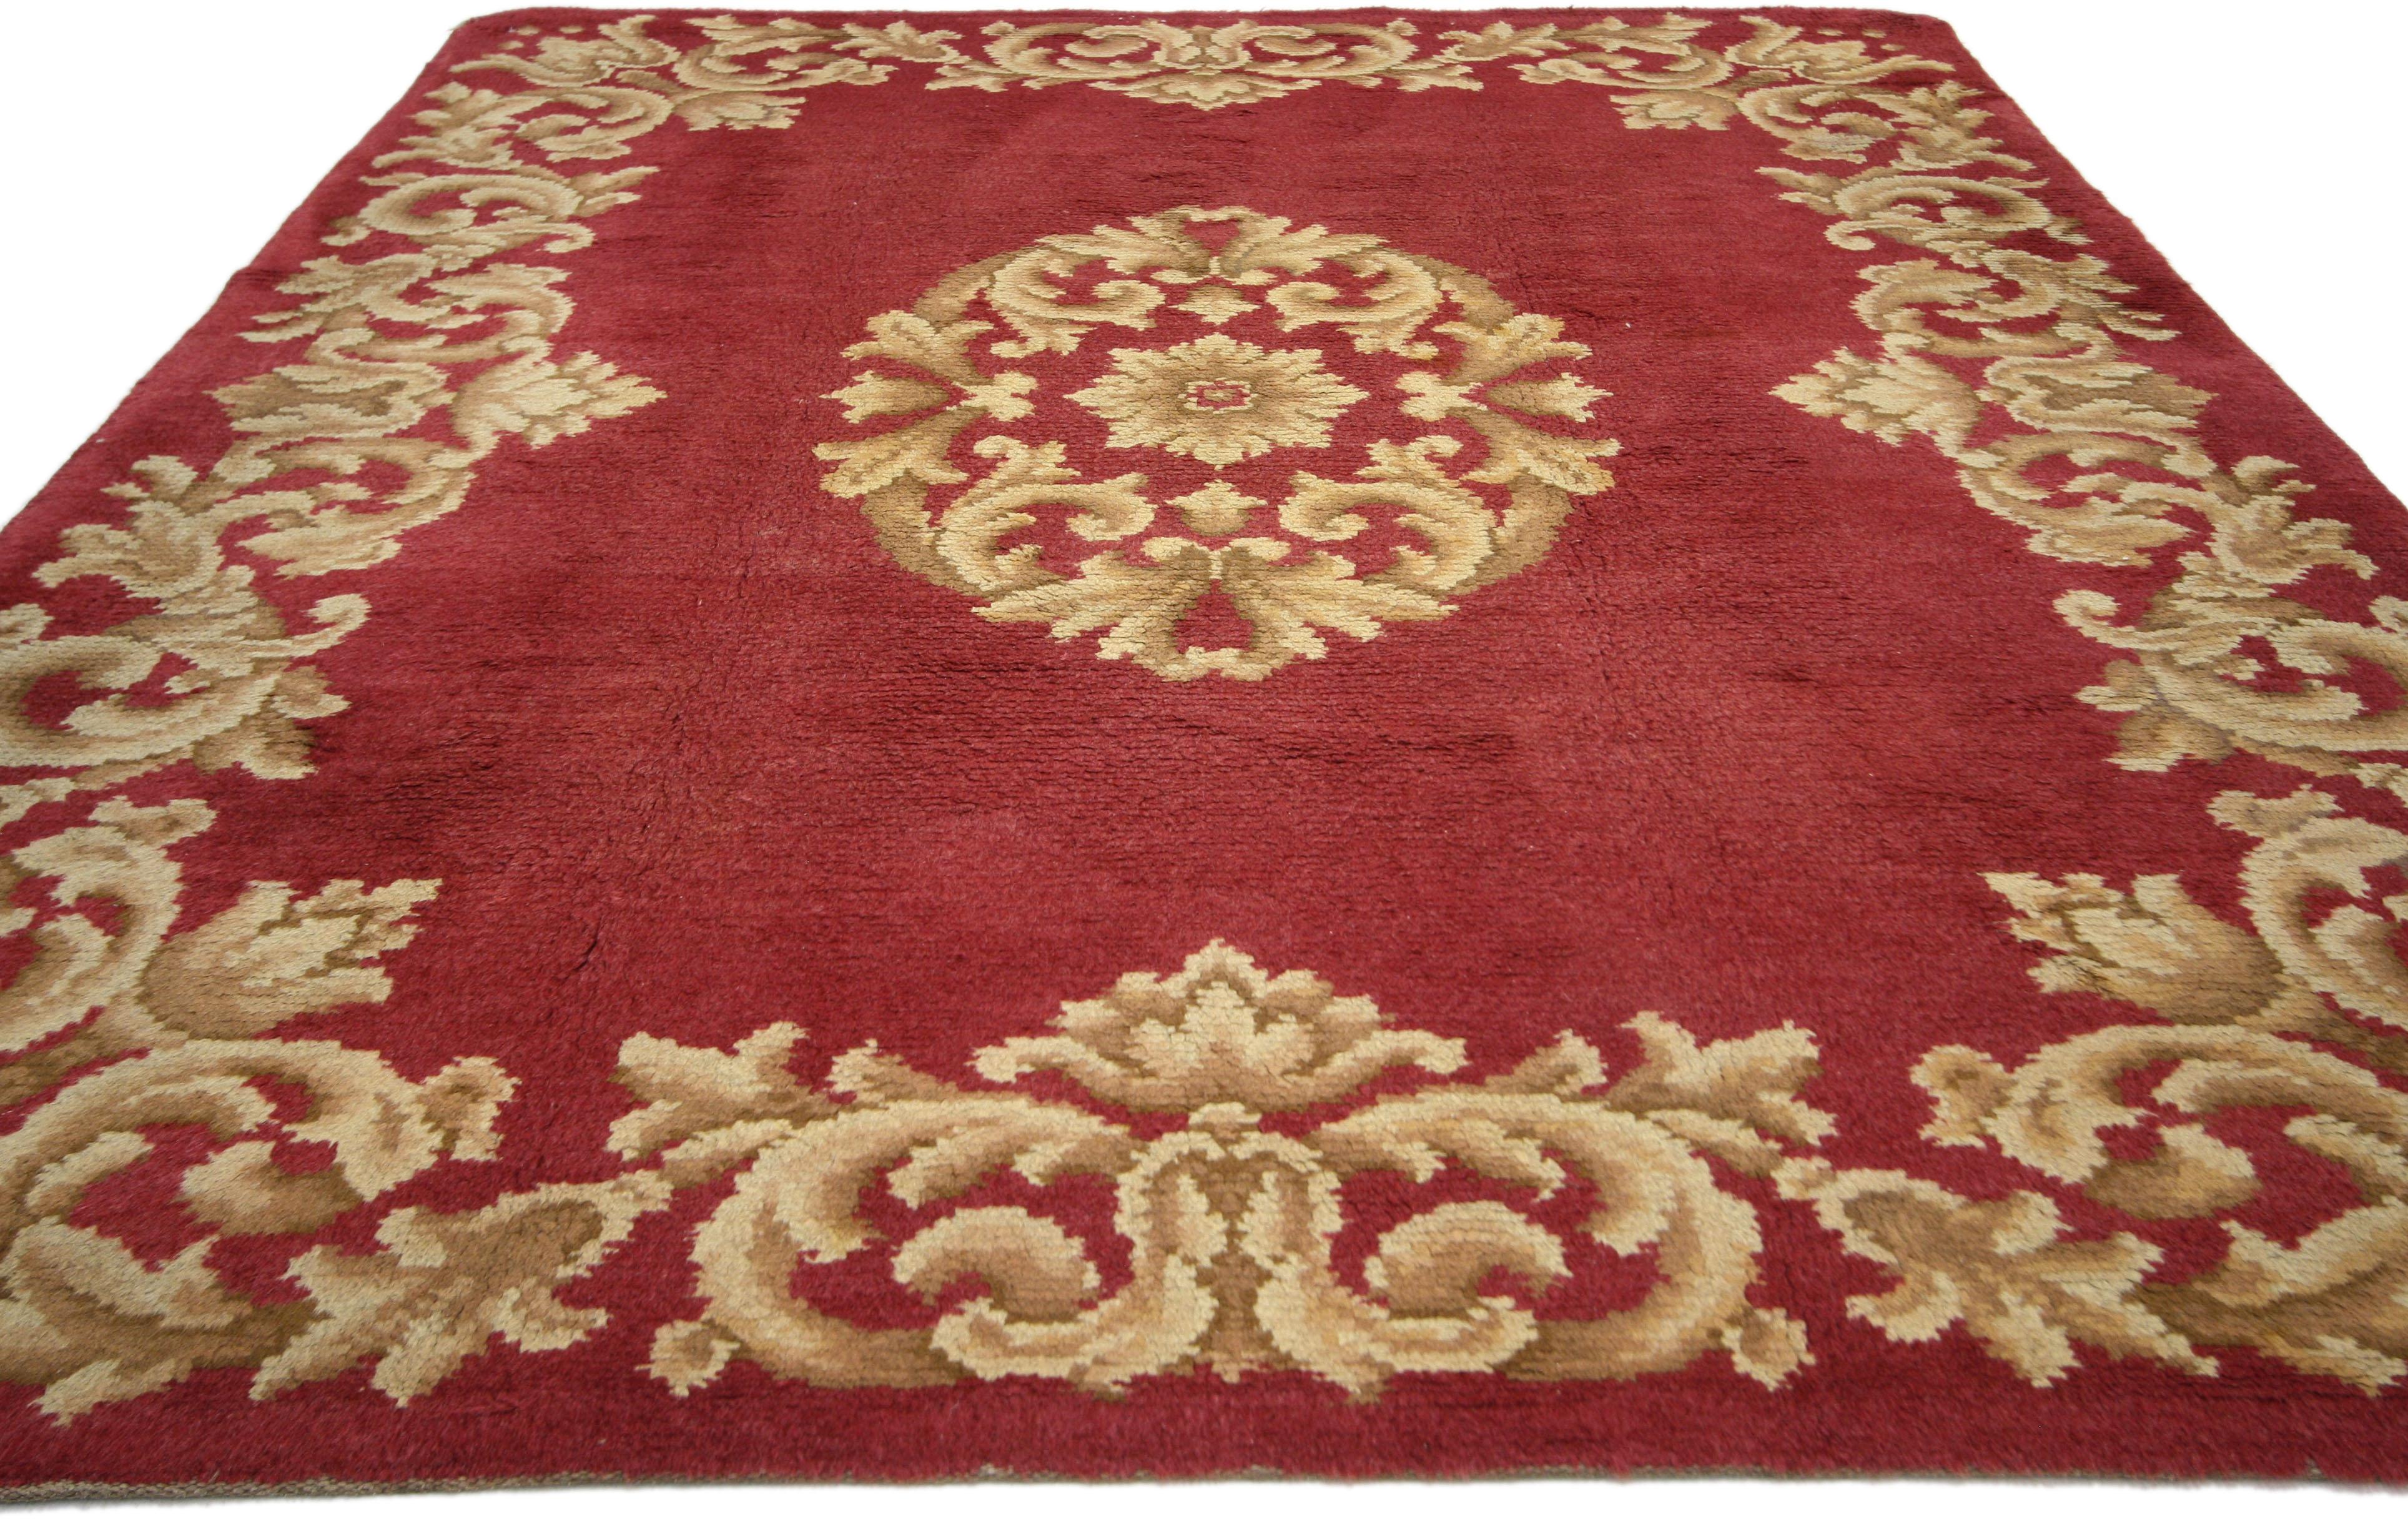 73073, Savonnerie espagnole vintage de style Rococo. Adapté à un intérieur royal, ce tapis vintage de la Savonnerie espagnole séduit par ses teintes rouge vif et dorées et son effet trompe-l'œil. Sur une toile de fond rouge rubis, des volutes de